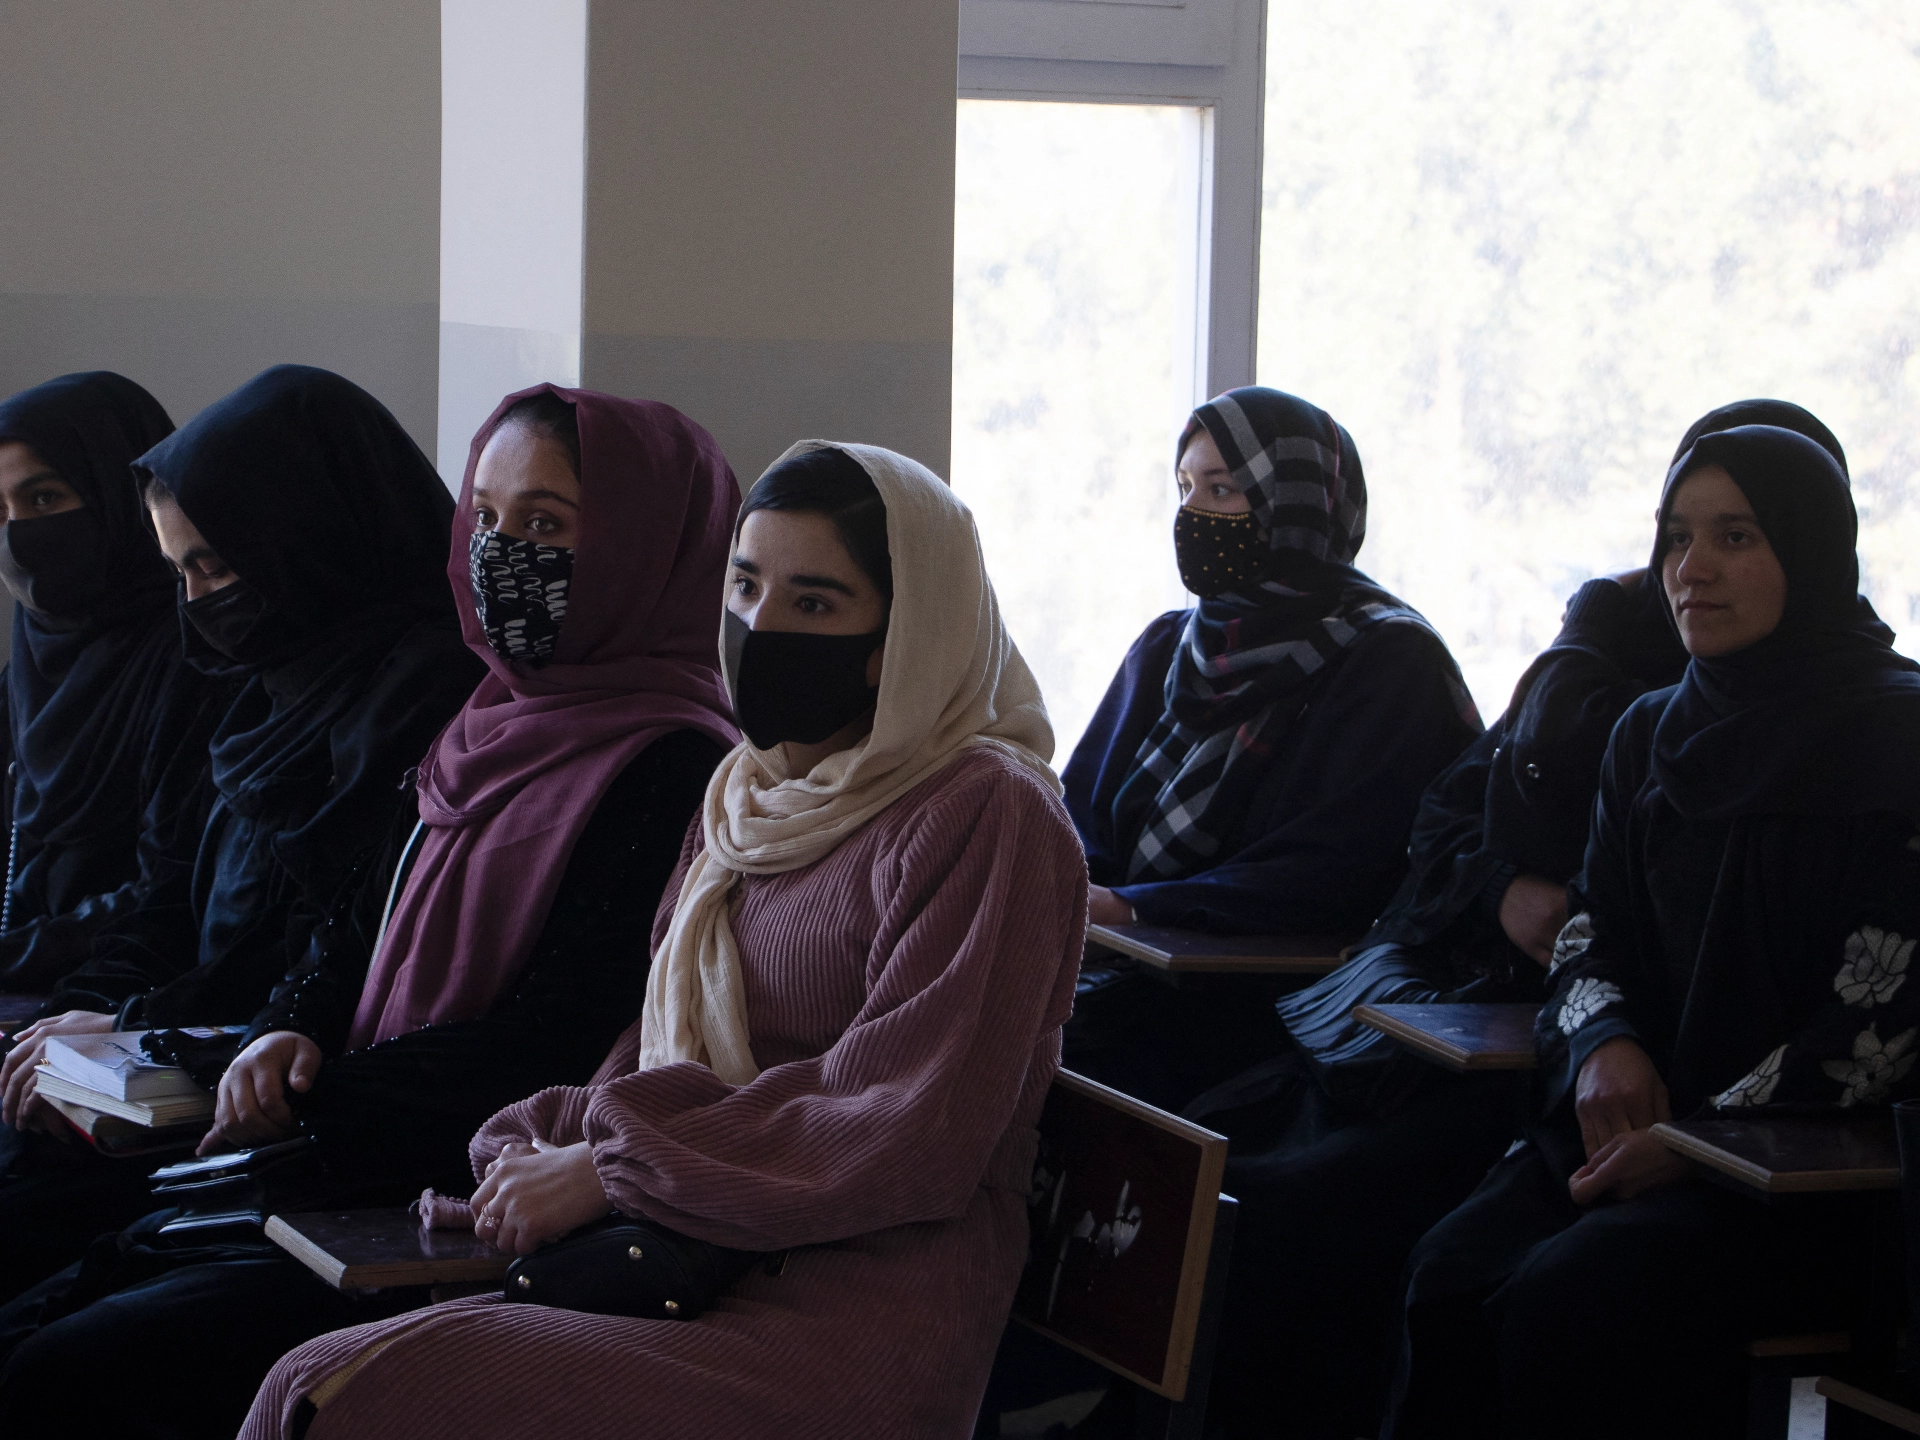  افغانی یونیورسٹیوں،تعلیمی مراکز میں اندراج میں 70فیصدکی کمی